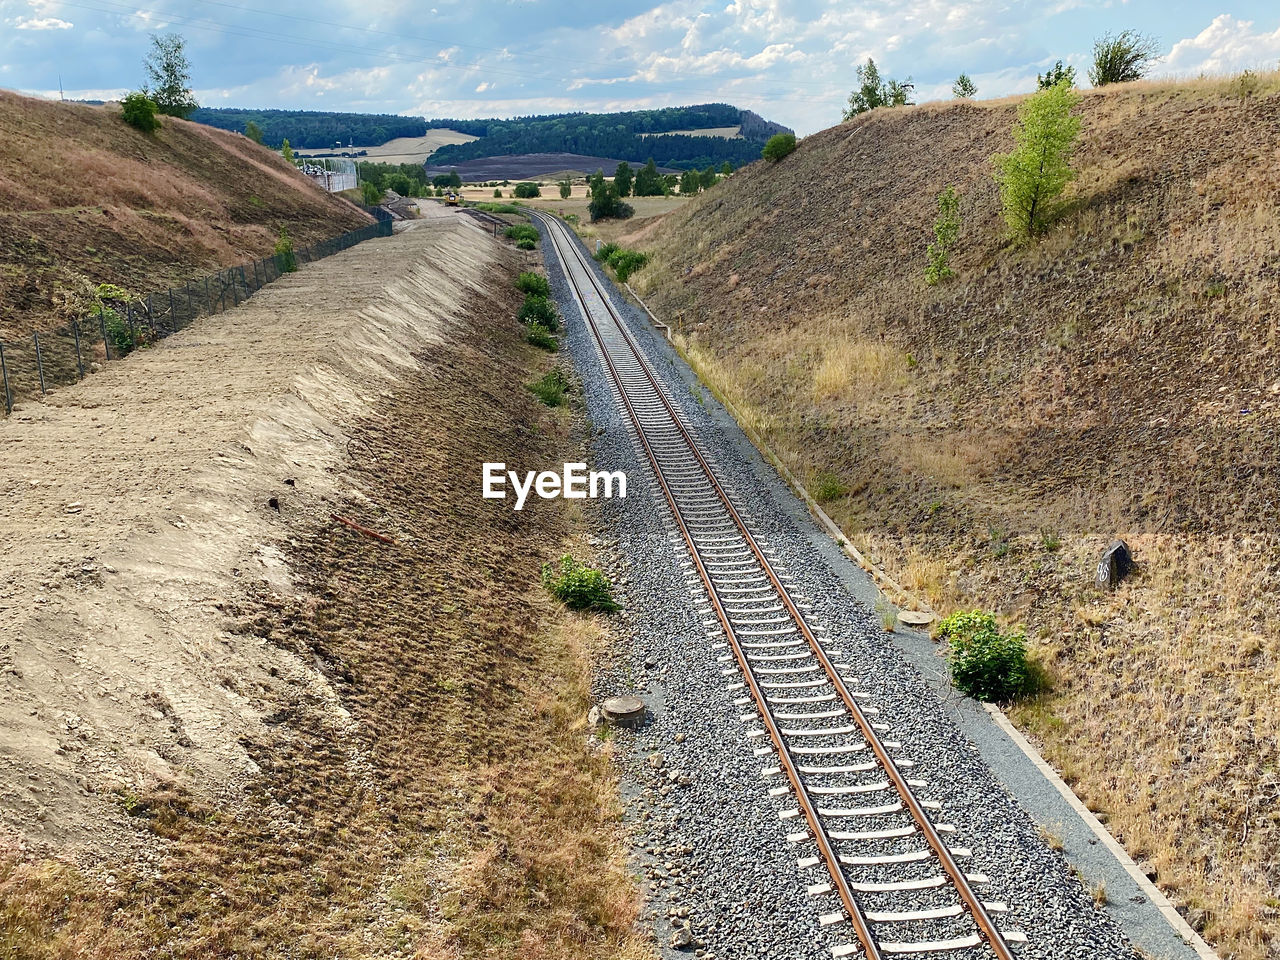 Railroad track amidst field